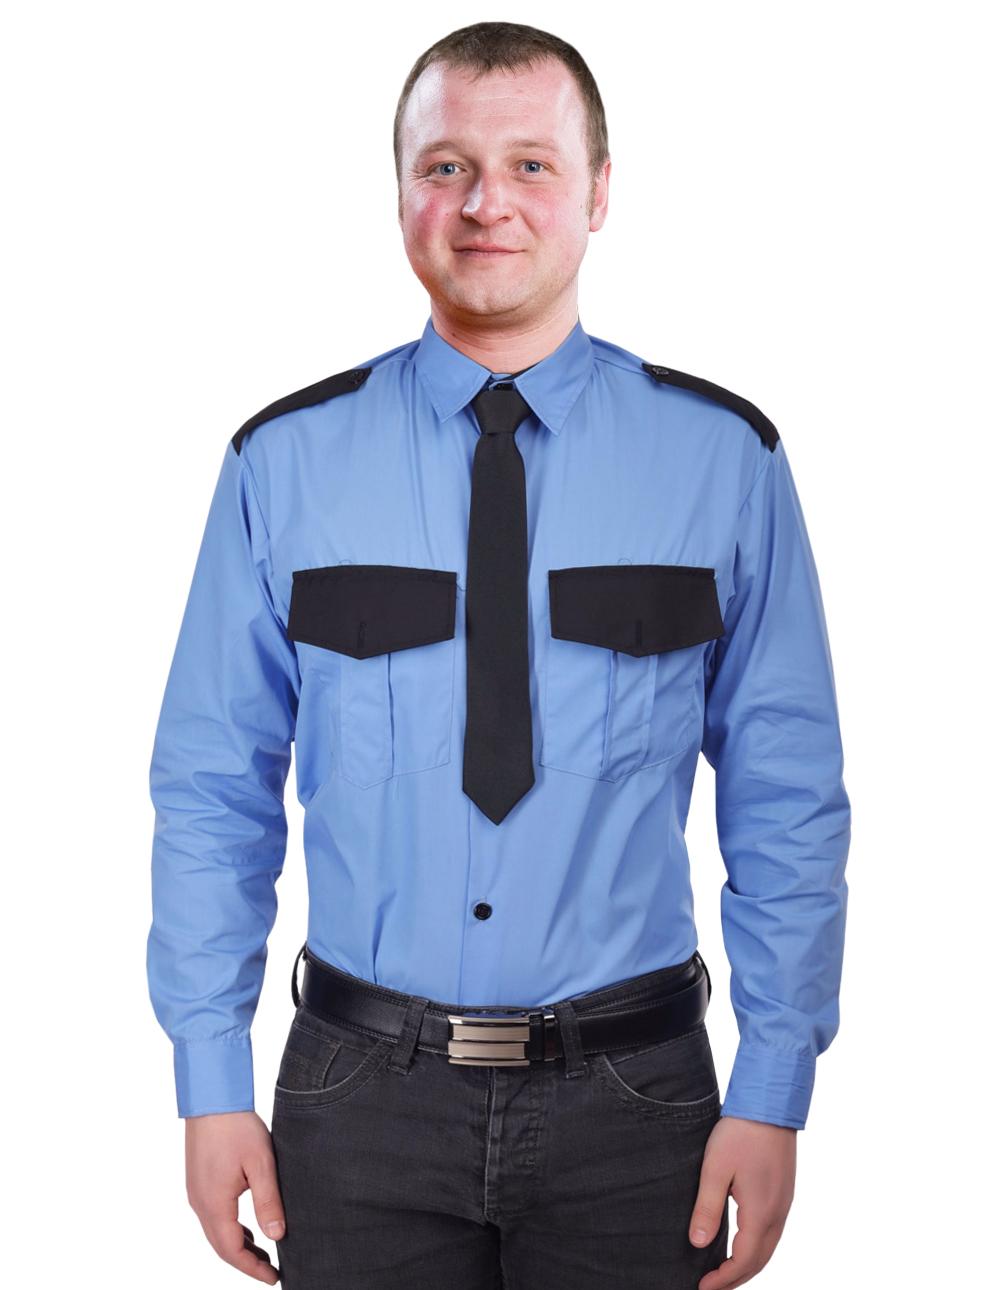 Рубашка Охранника в заправку цв.Голубой длинный рукав 